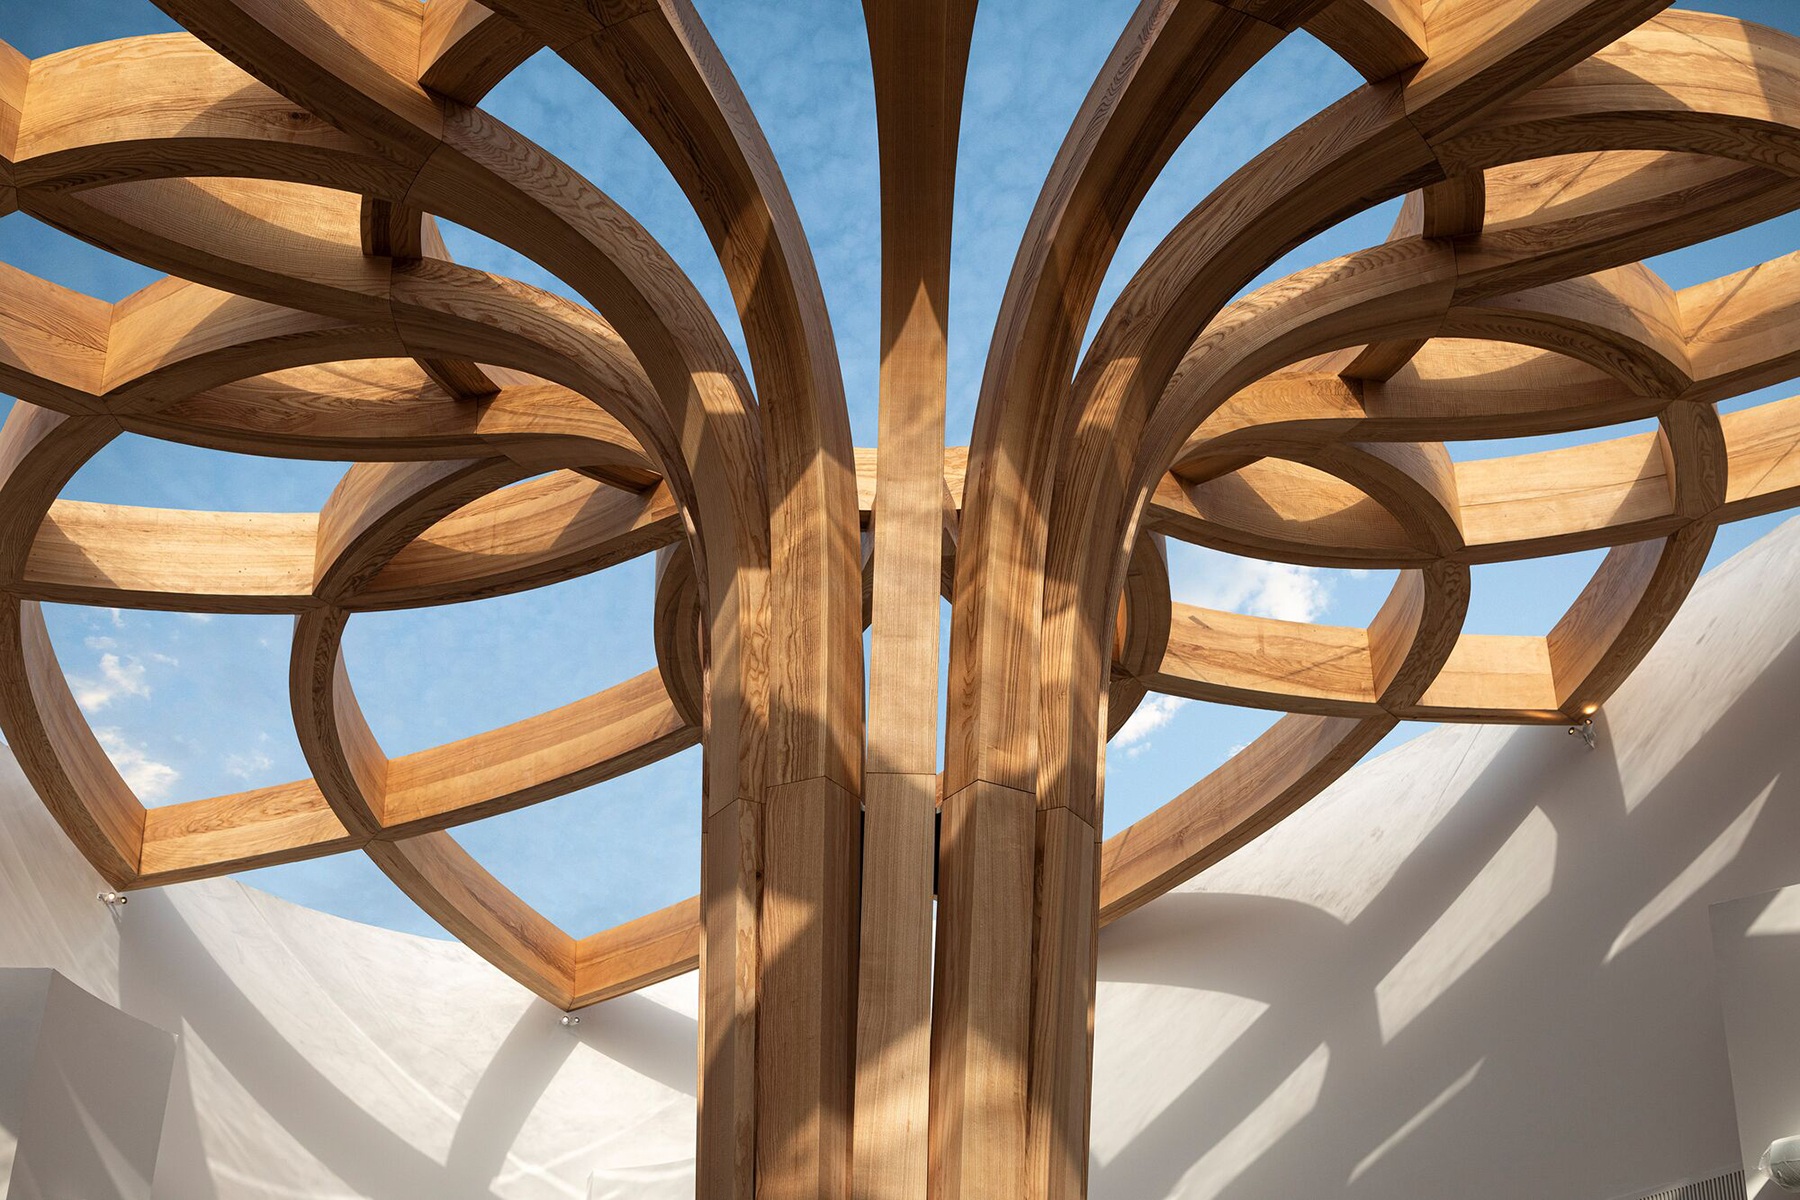 Free Form-Holzstruktur in Sonnenblumenform